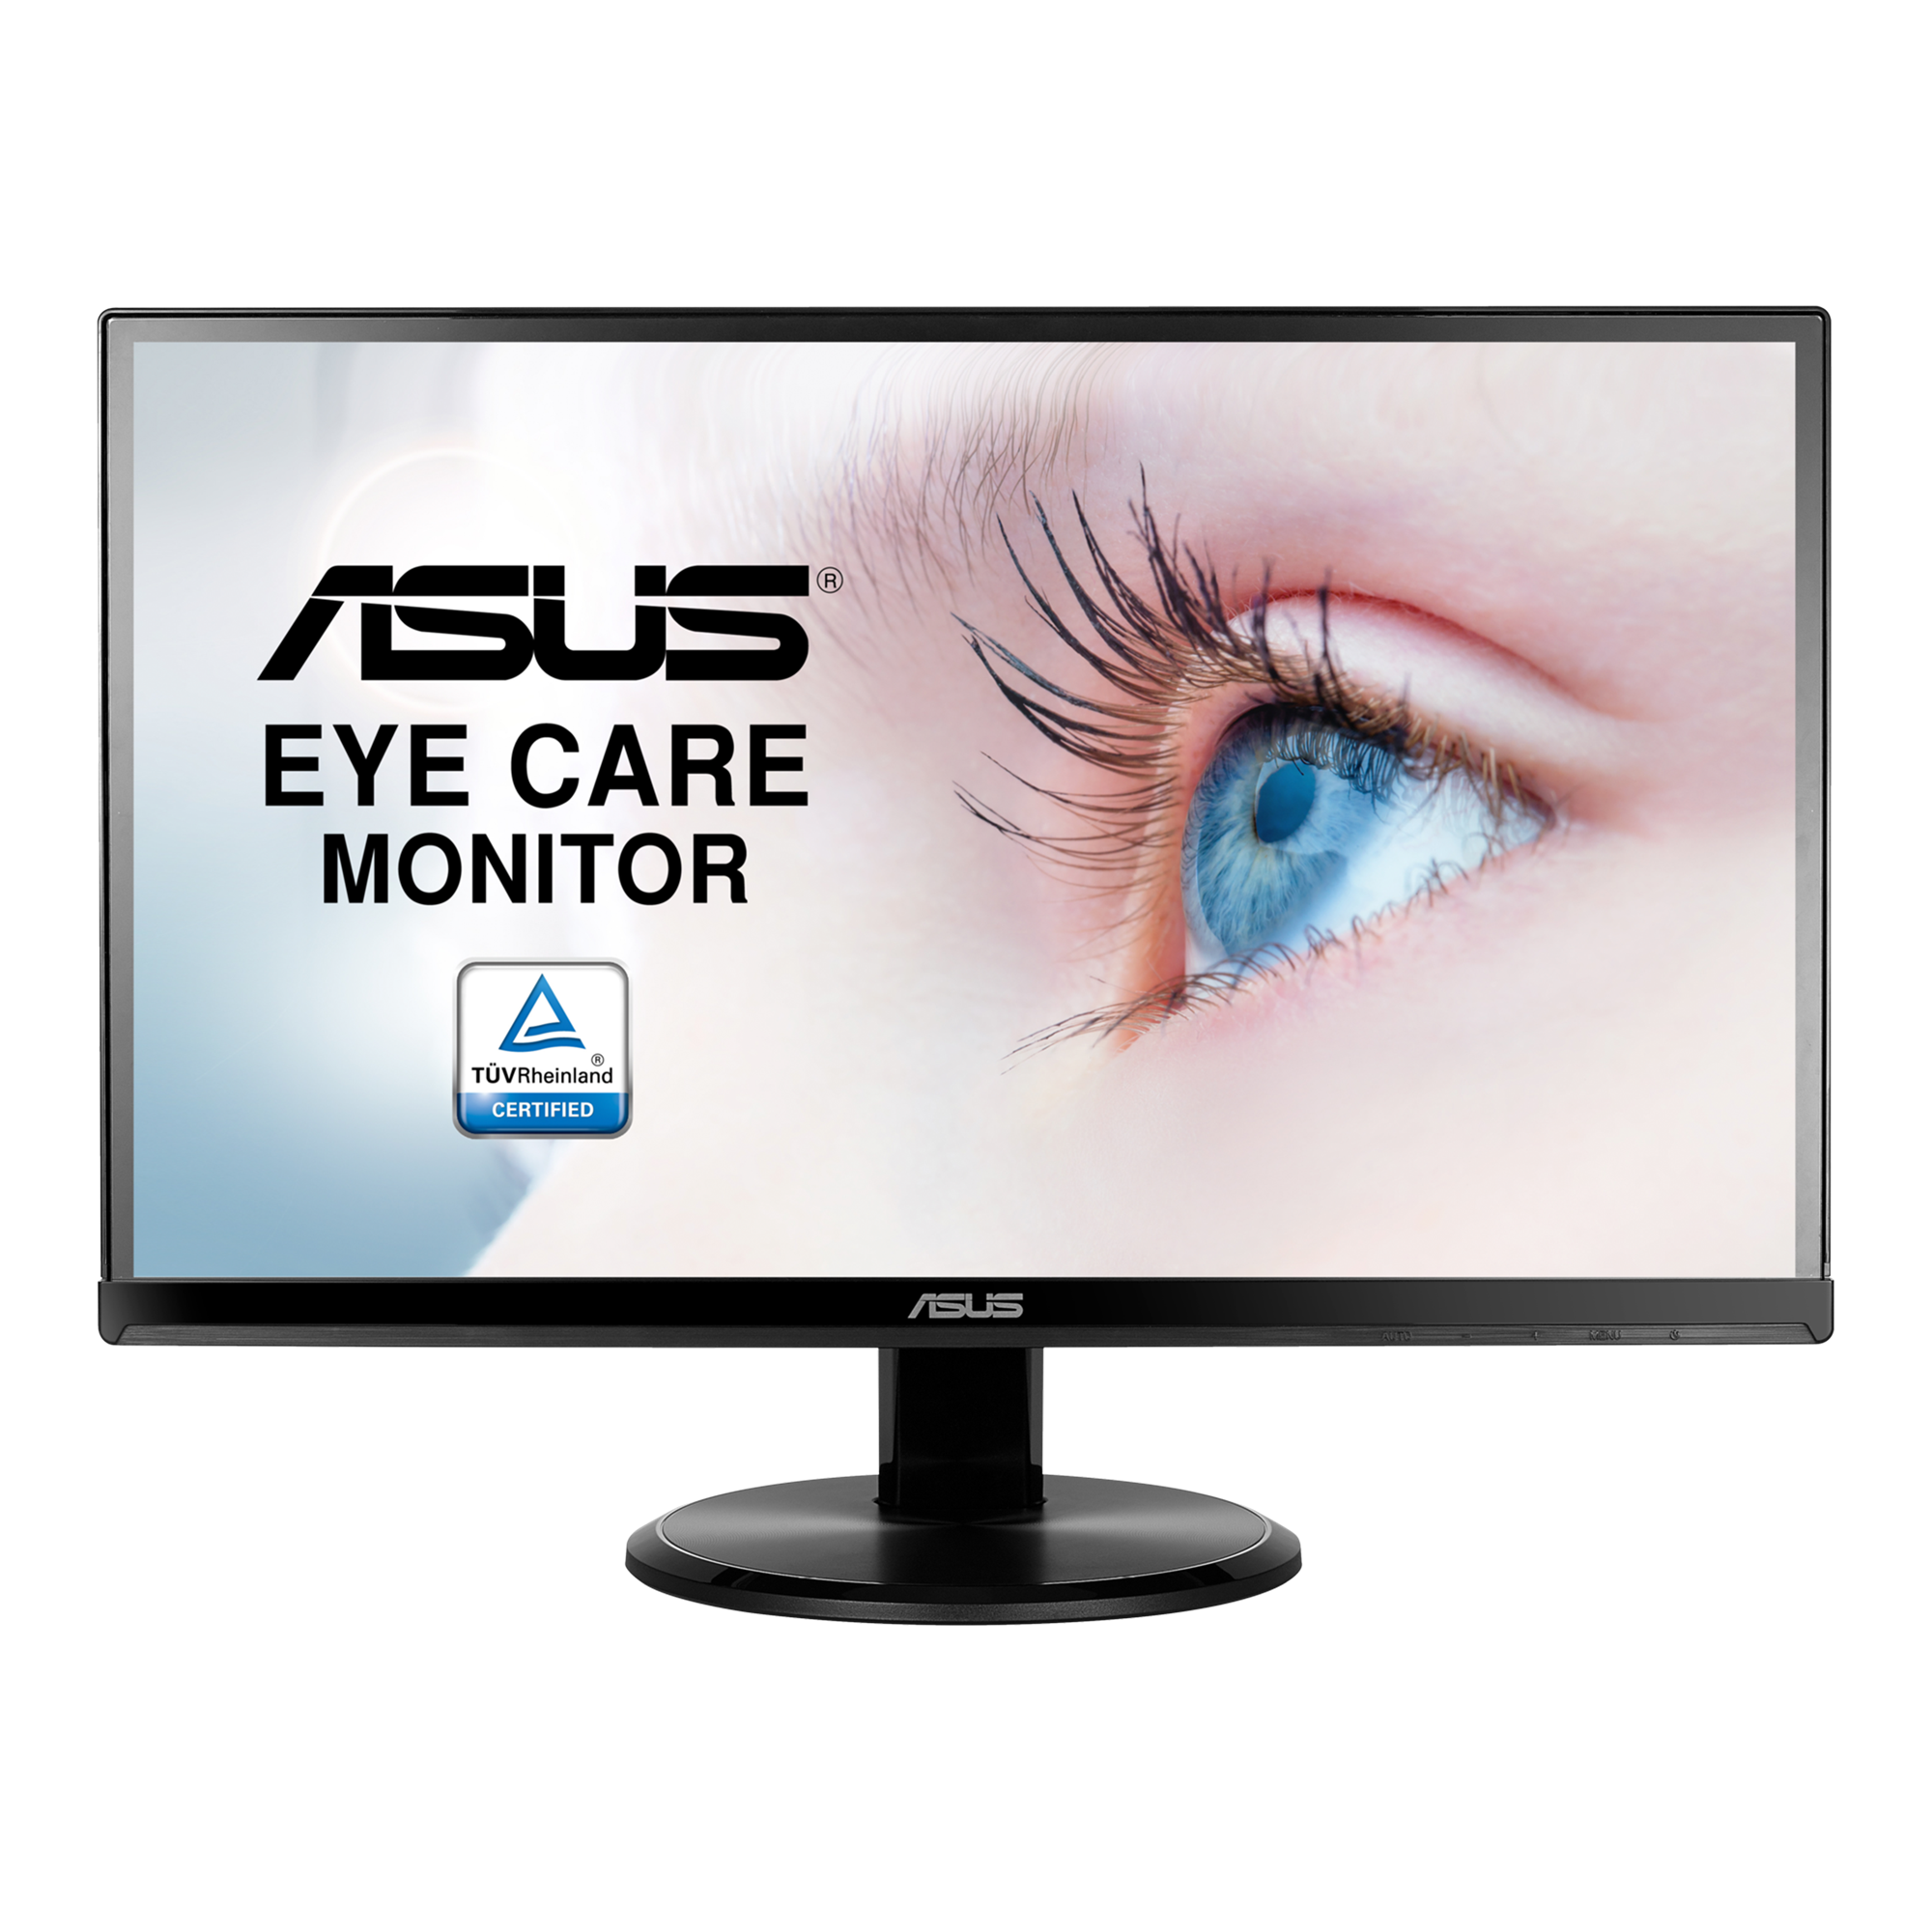 ASUS VA229HR Eye Careモニター – 21.5型, フルHD, IPS, 75Hz, ブルー